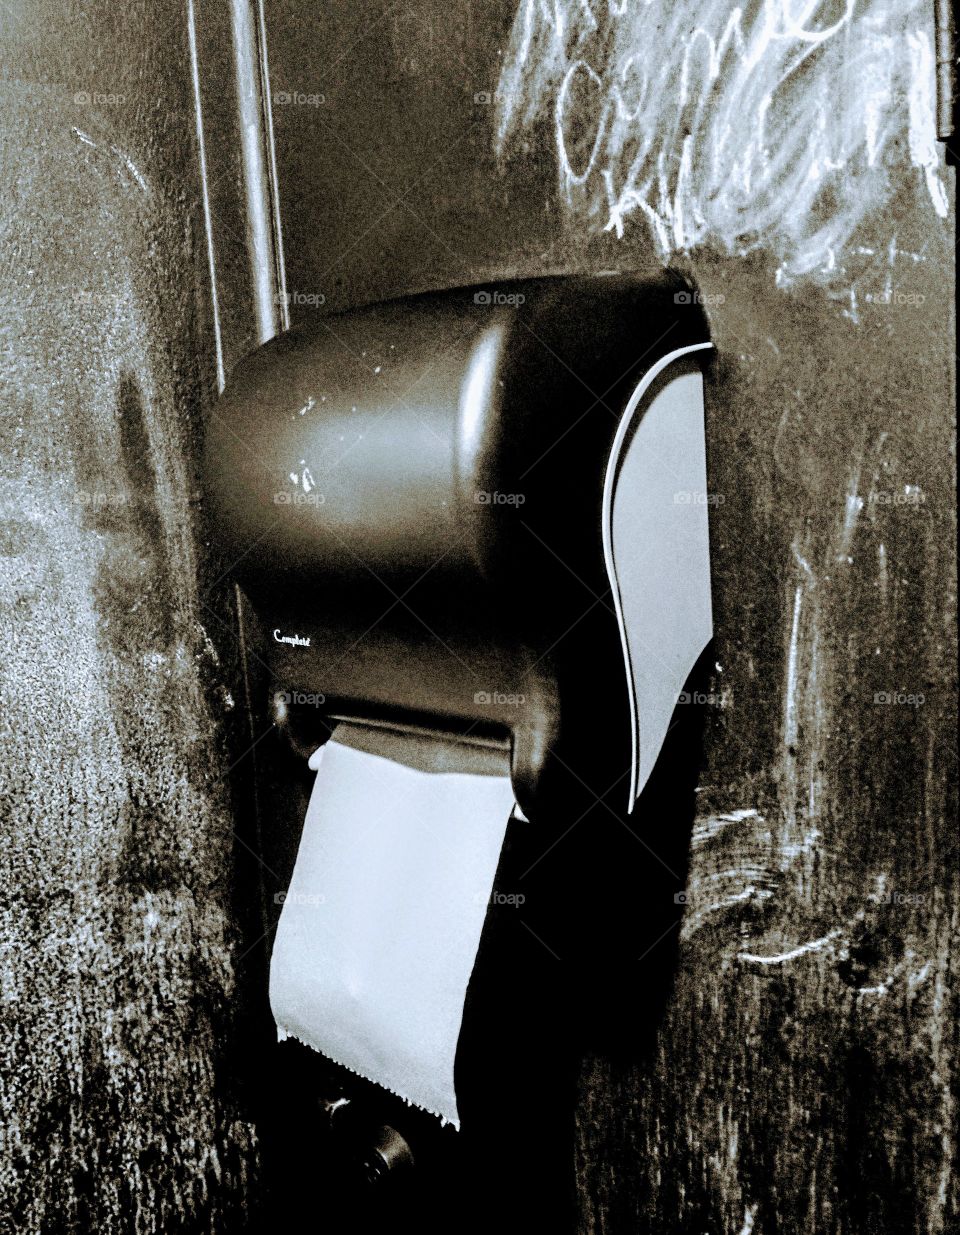 paper towel dispenser in trendy restroom